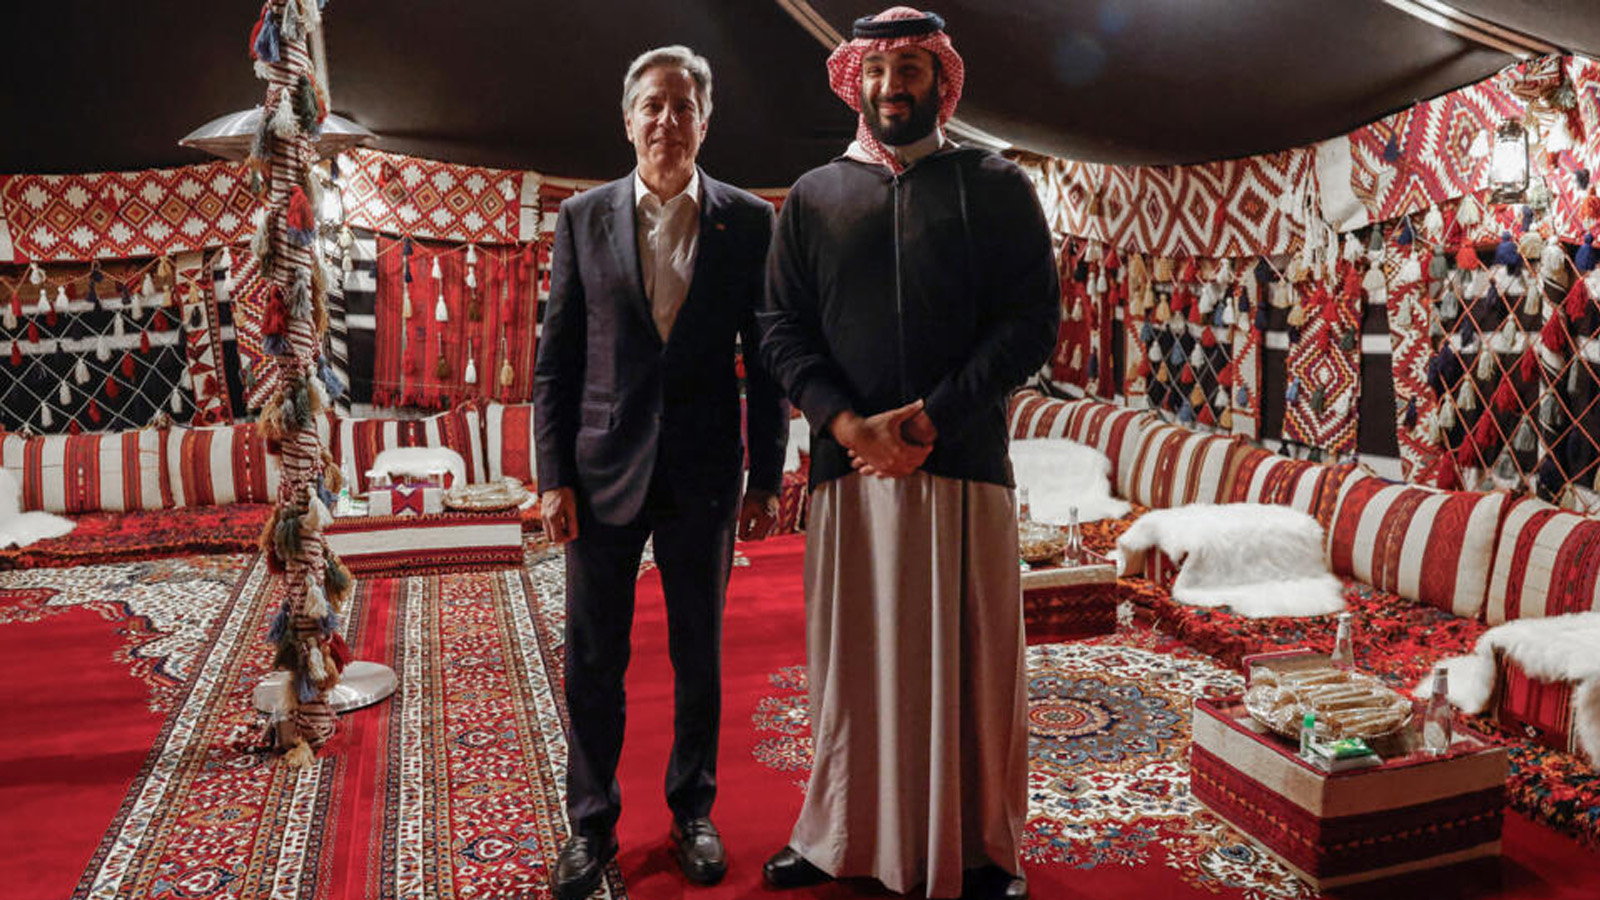 ولي العهد السعودي الأمير محمد بن سلمان يستقبل وزير الخارجية الأميركي أنتوني بلينكن في العلا شمال غرب المملكة العربية السعودية في 8 يناير(كانون الأول) 